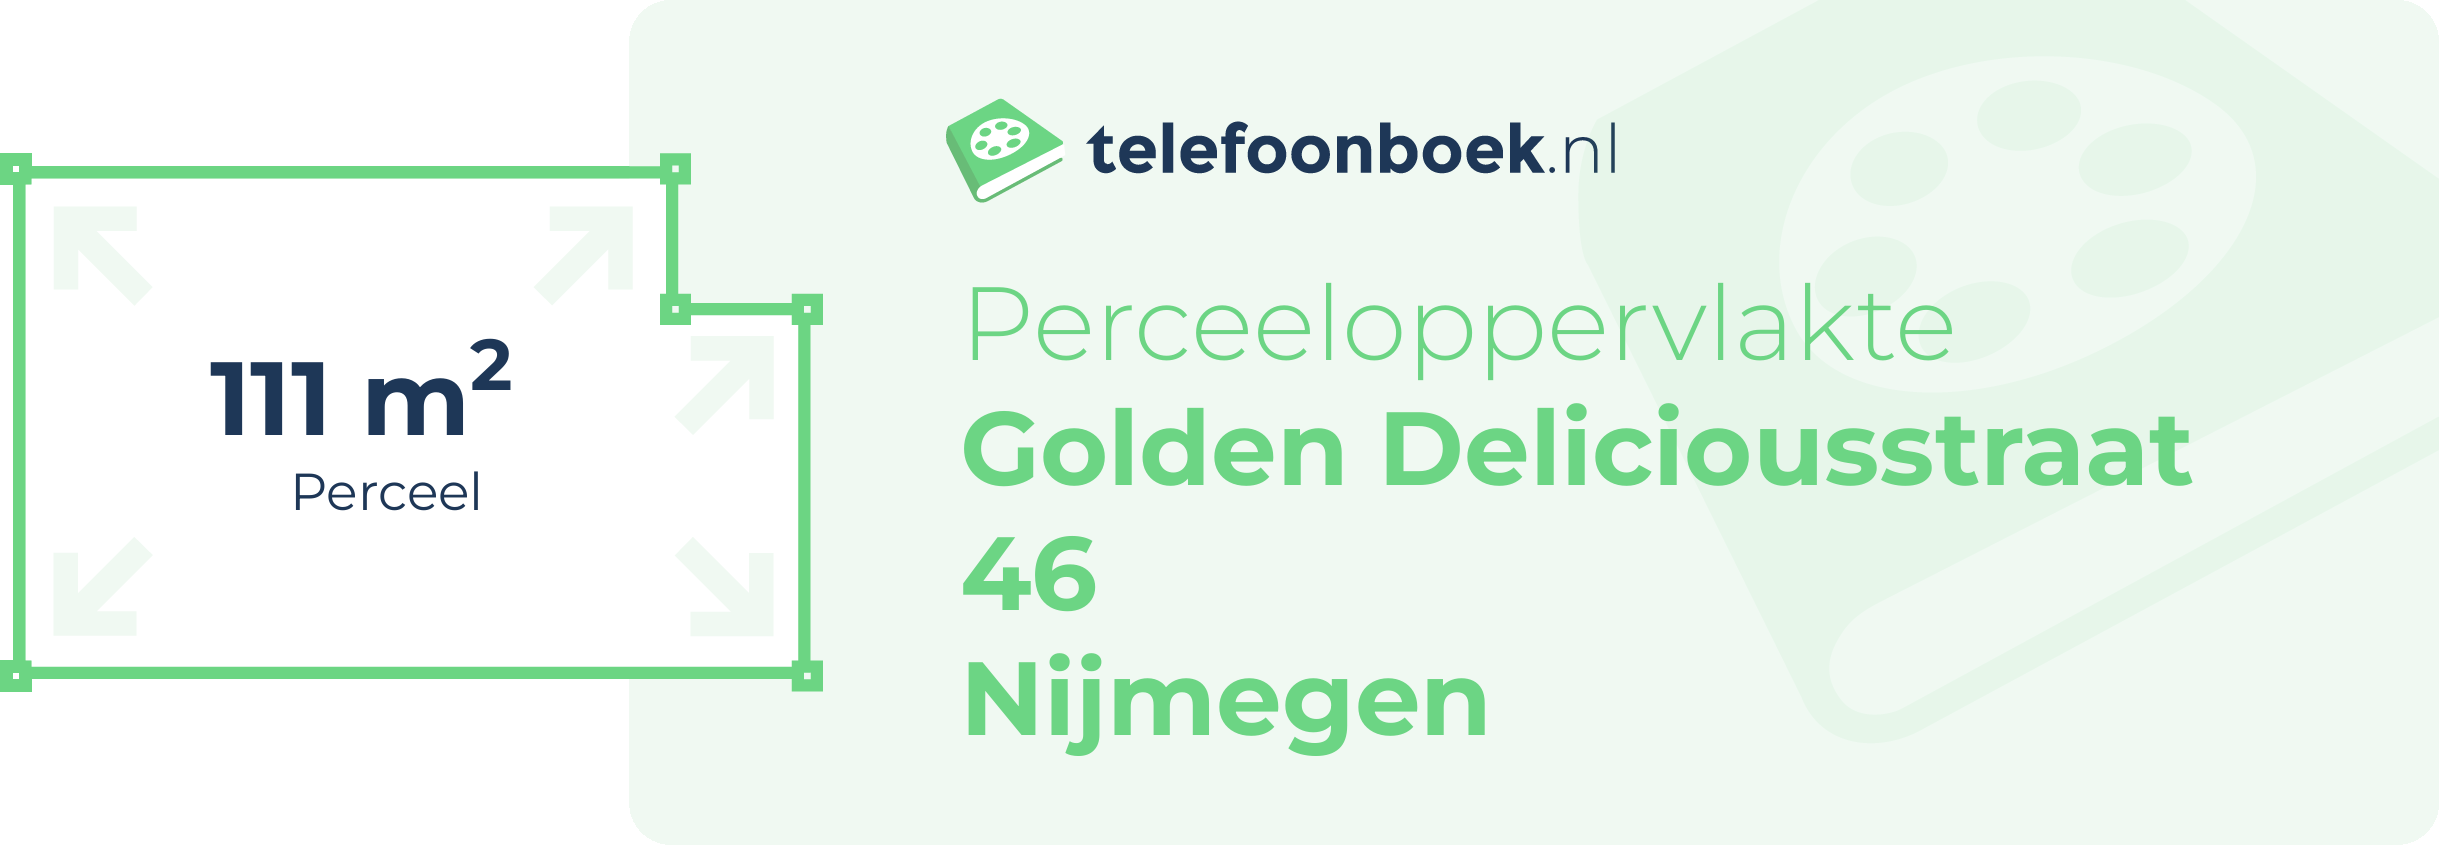 Perceeloppervlakte Golden Deliciousstraat 46 Nijmegen